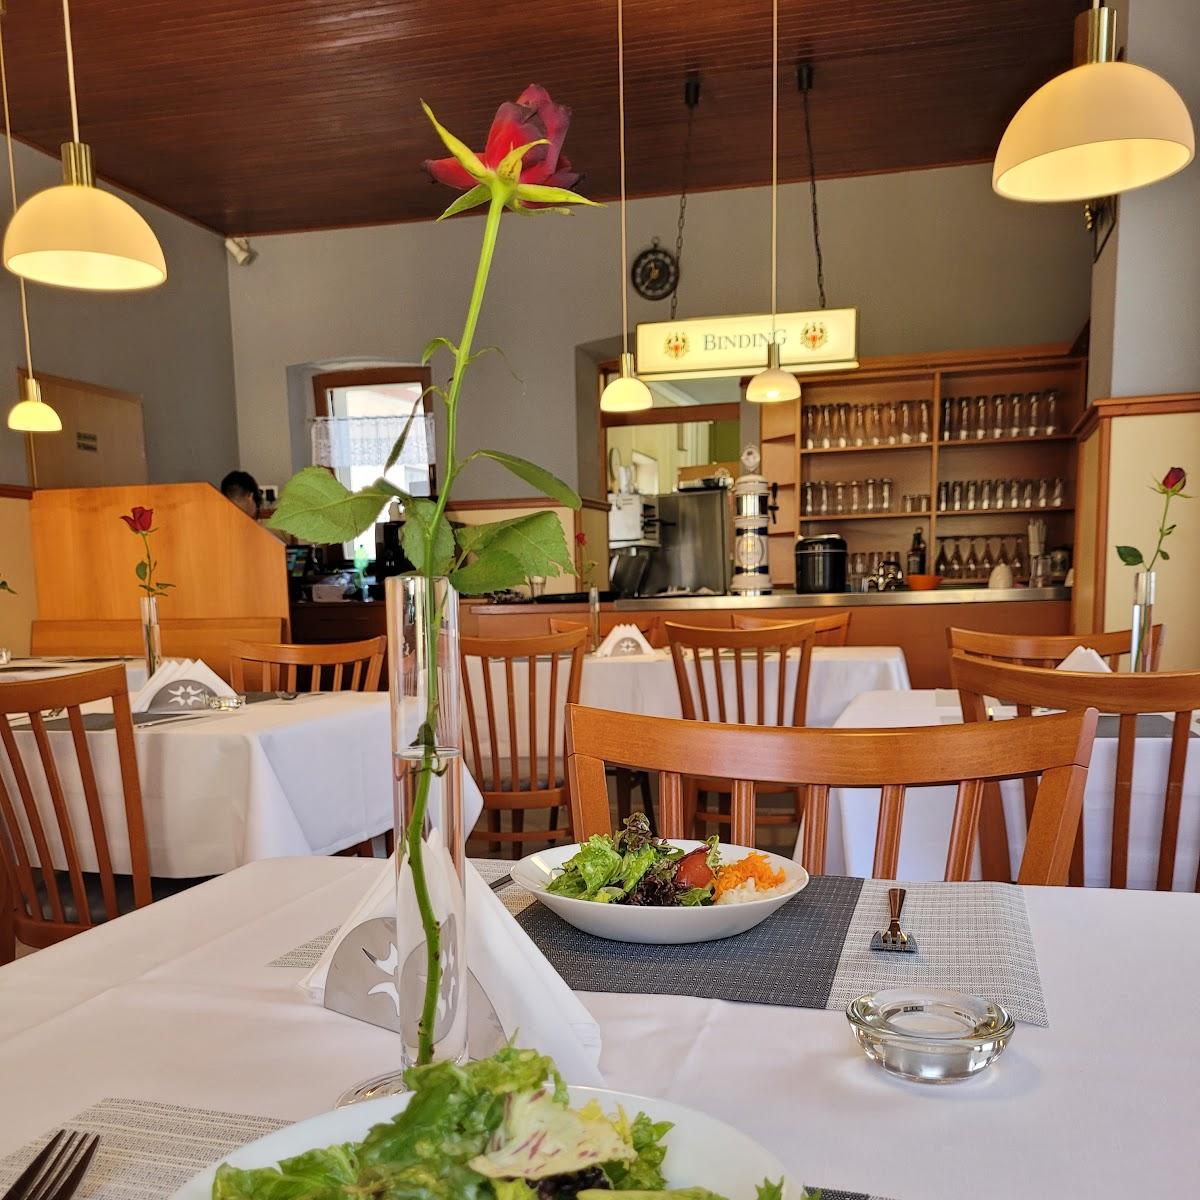 Restaurant "Löwen" in Kraichtal